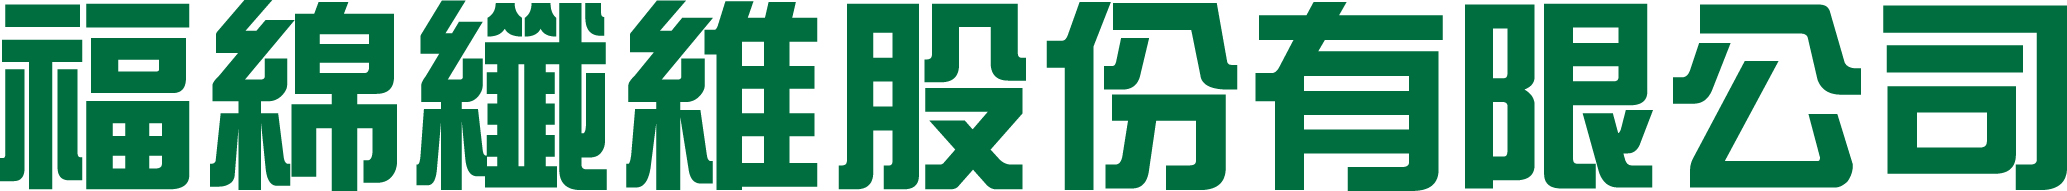 福綿纖維股份有限公司 Logo